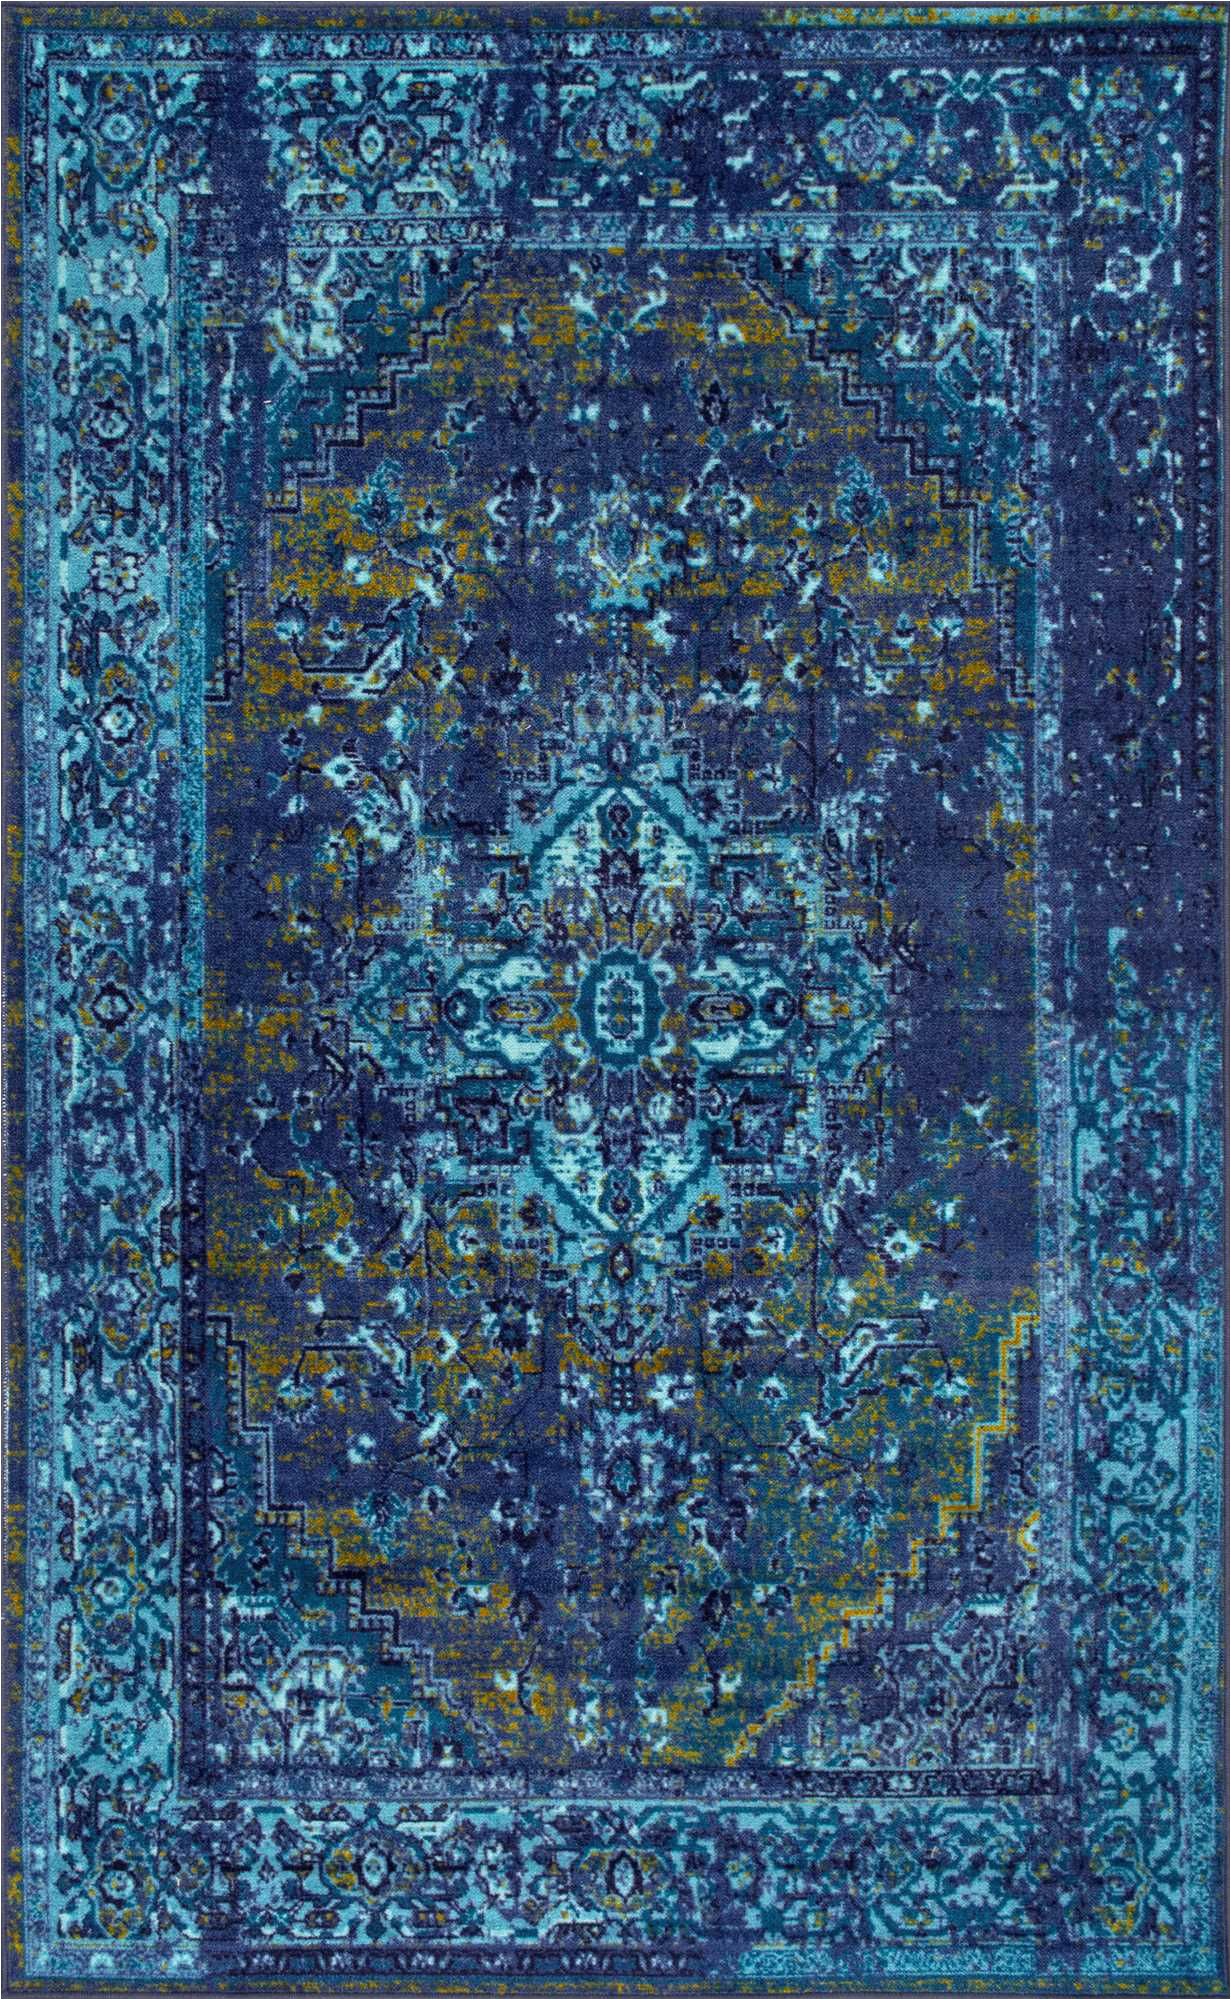 Nuloom Blue Overdyed Rug ashlina Printed Persian Overdyed Vintage Blue Rug